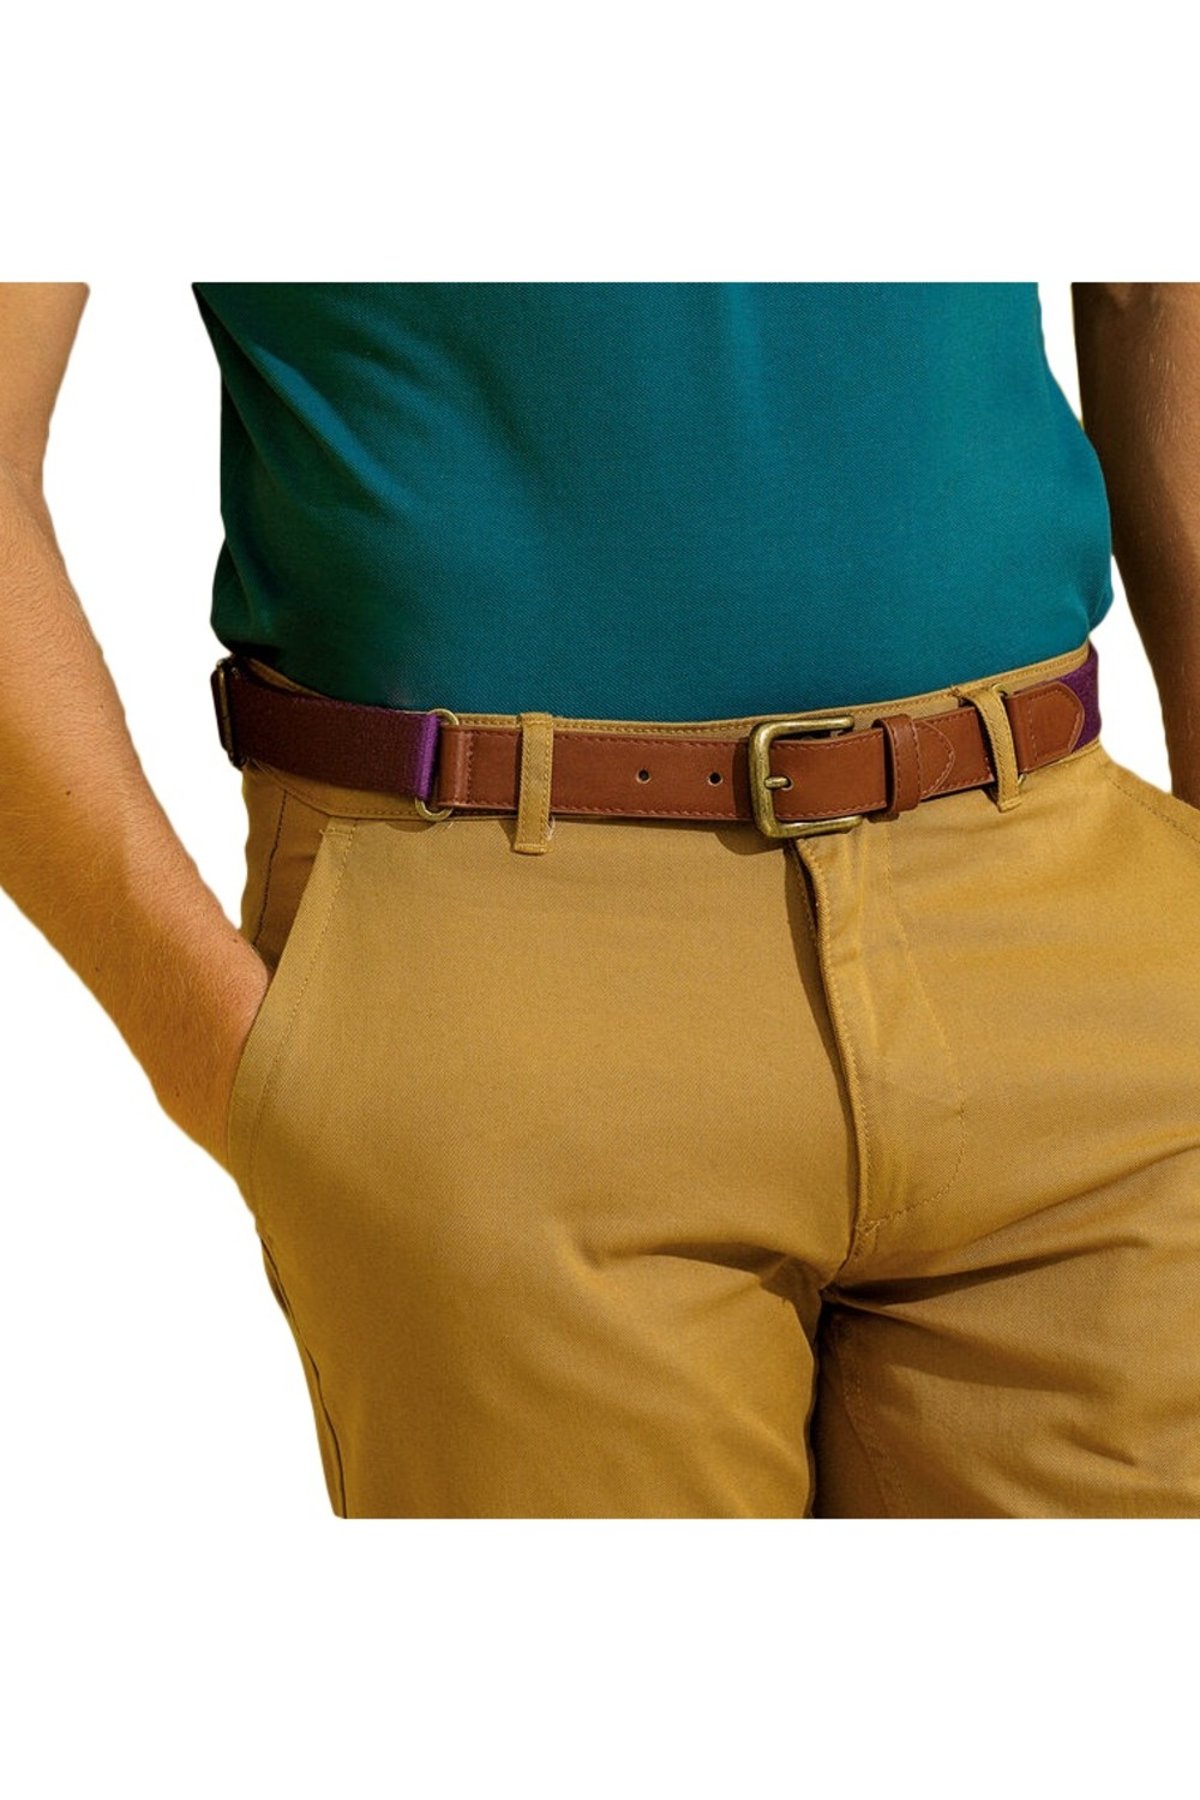 Leather Automatic Buckles, Men Orange Pants Belts